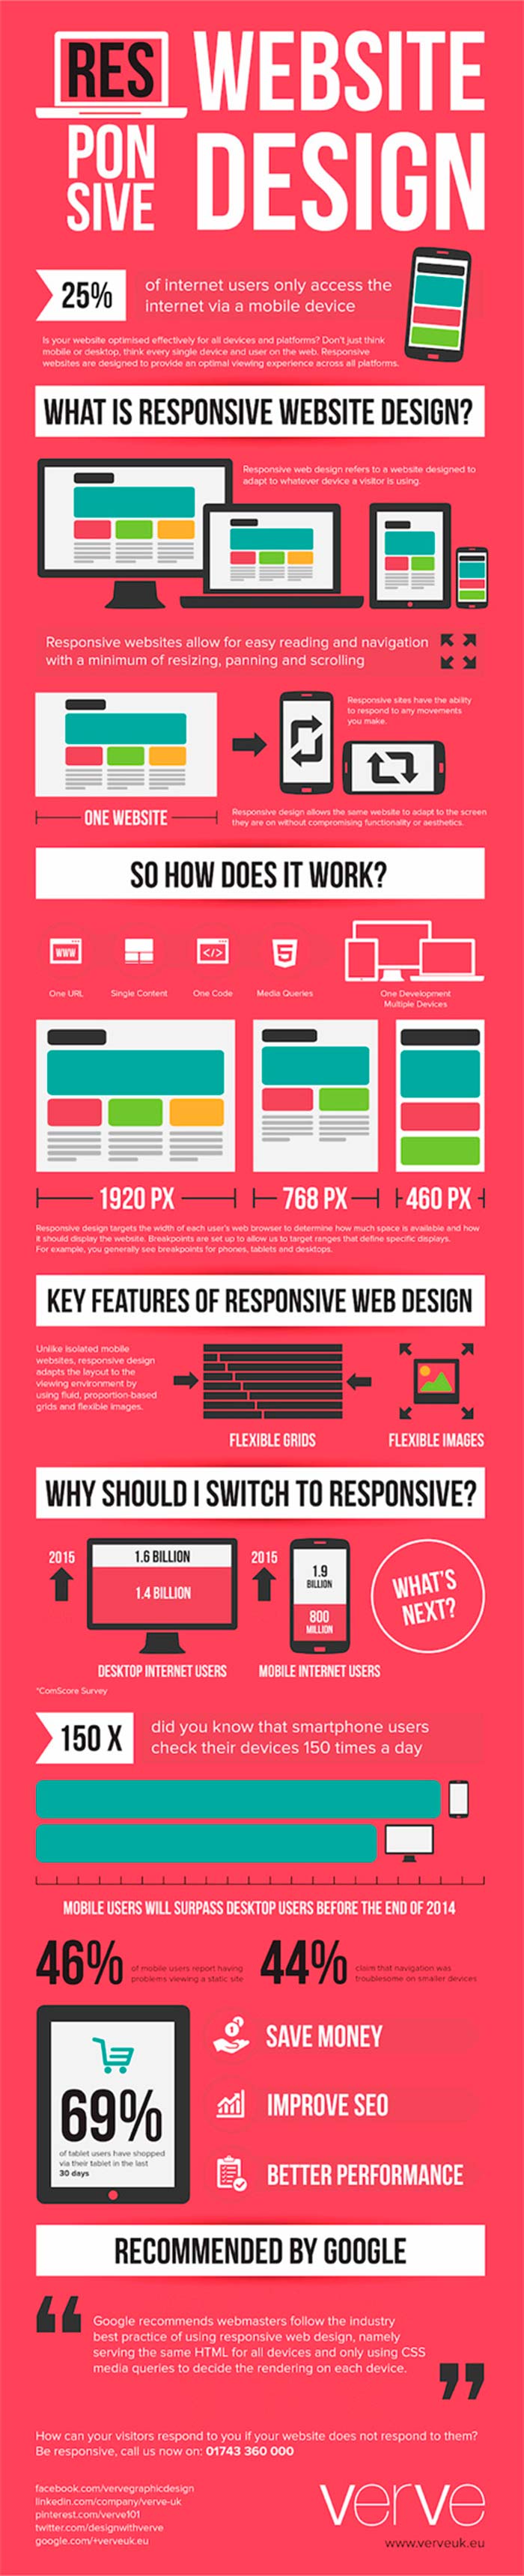 Infografia sobre el diseño web responsive